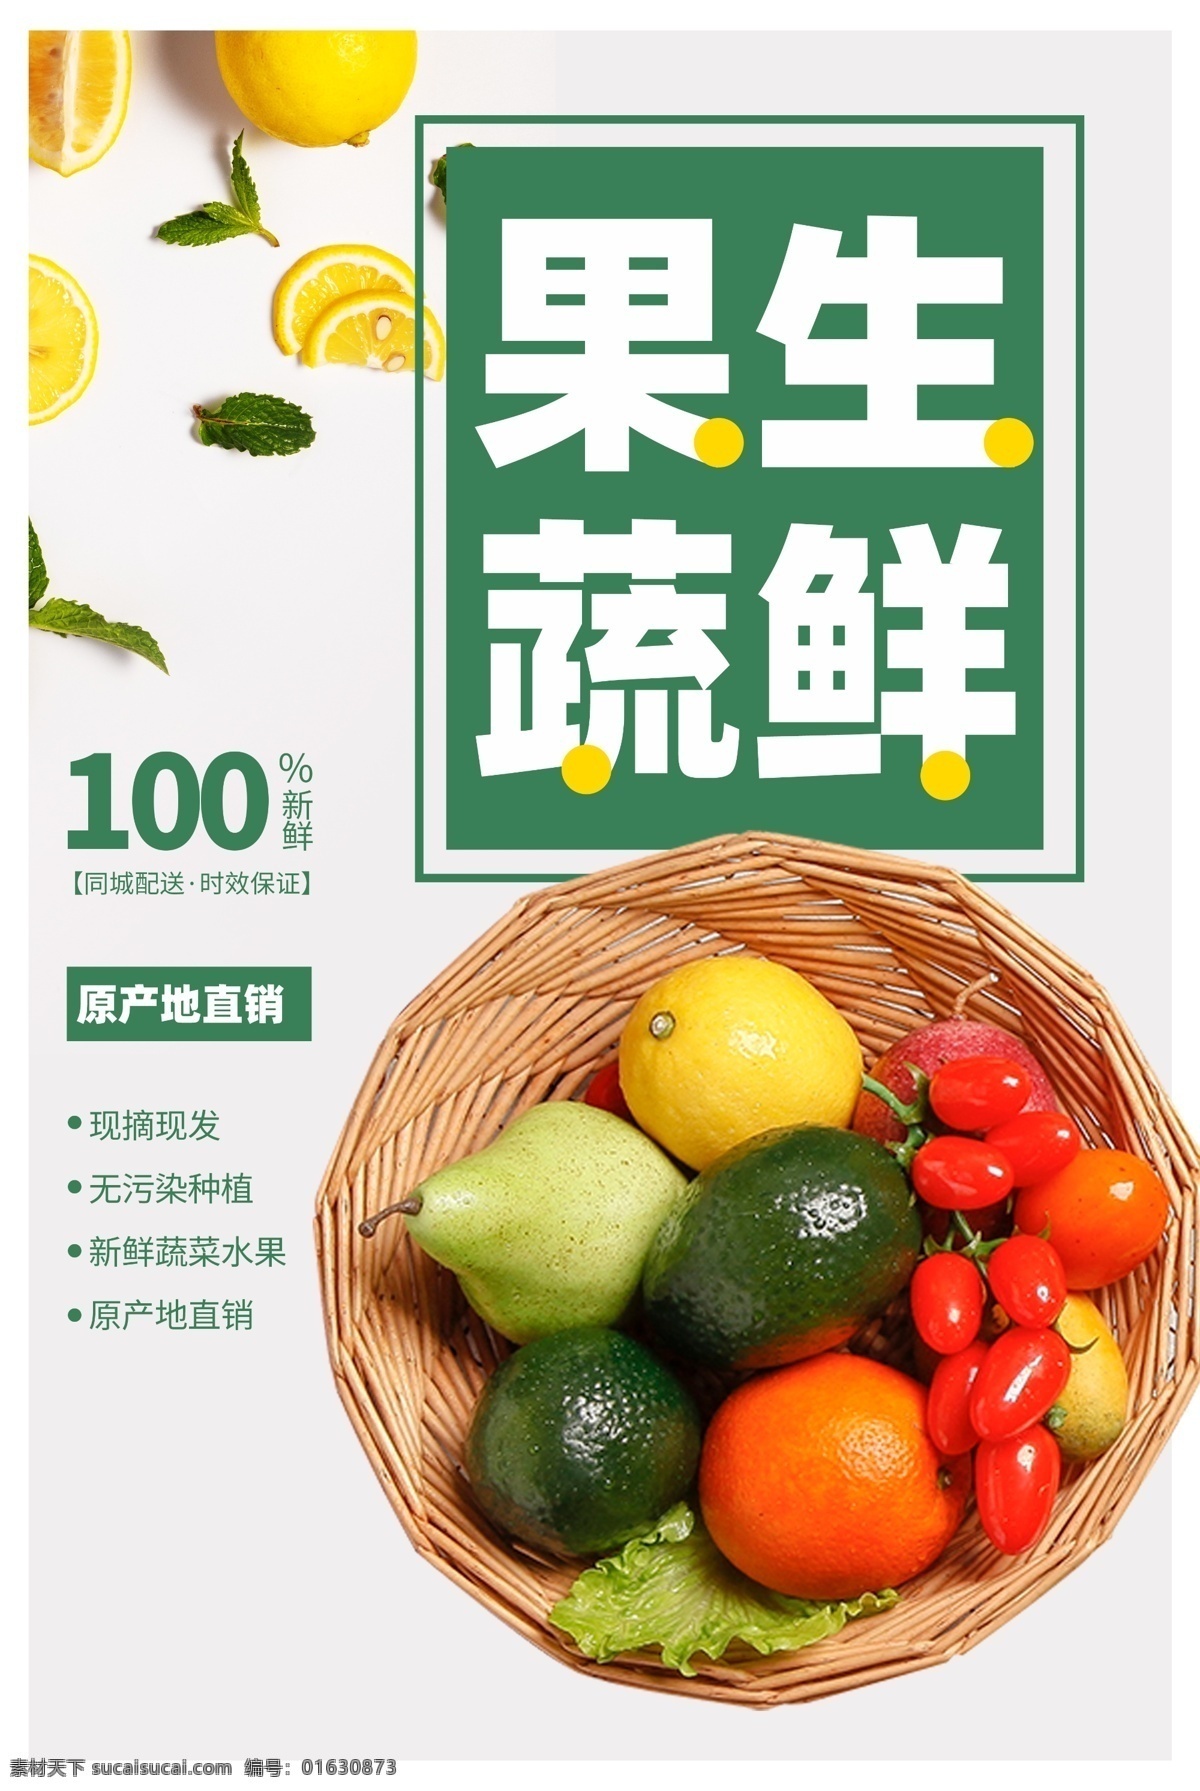 果蔬 生鲜 超市 商场 活动 宣传海报 果蔬生鲜 宣传 海报 餐饮美食 类